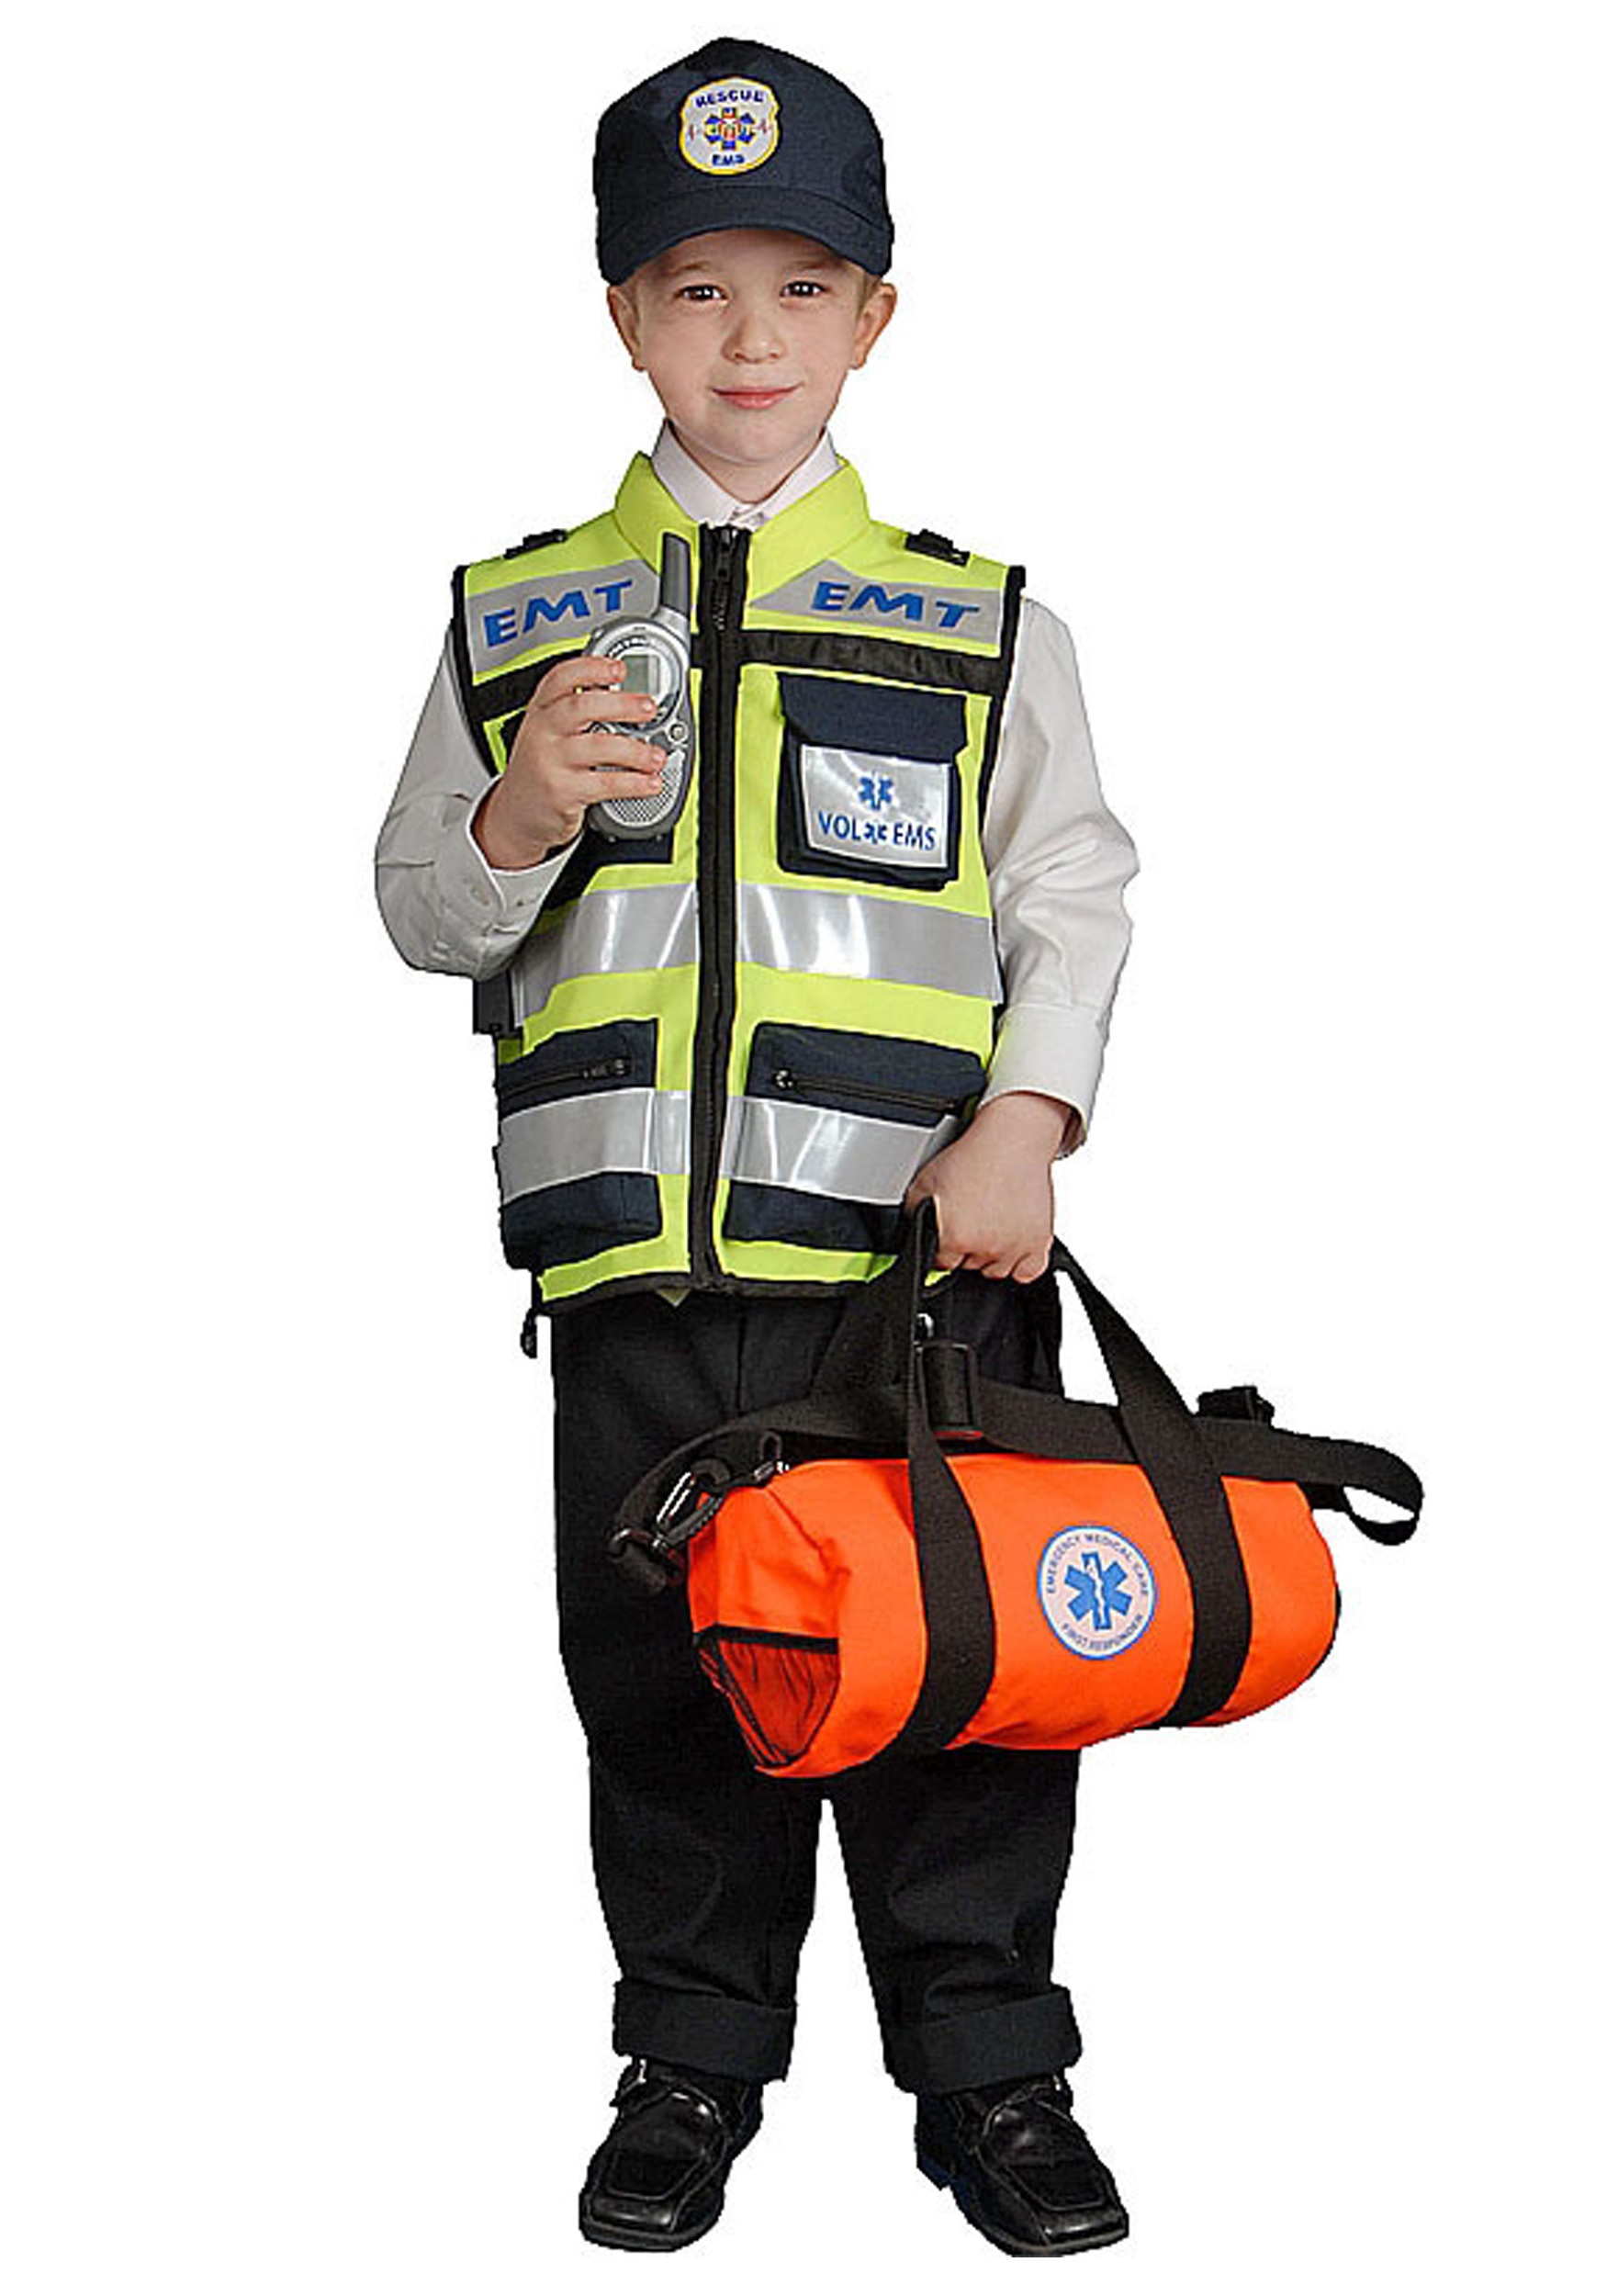 EMT Vest Kids Costume